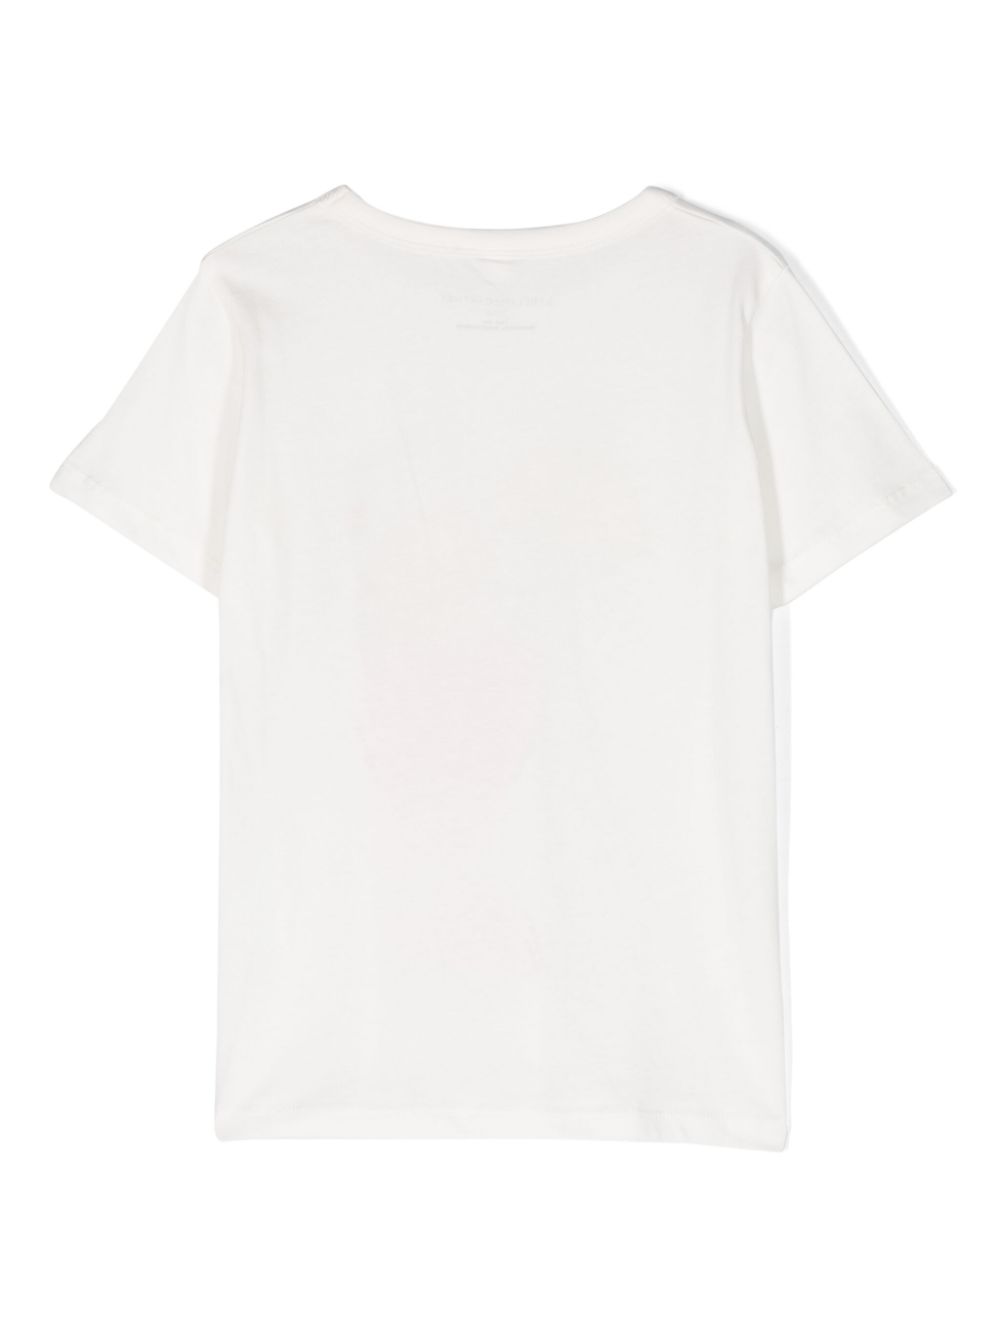 T-shirt bianca per bambini con stampa